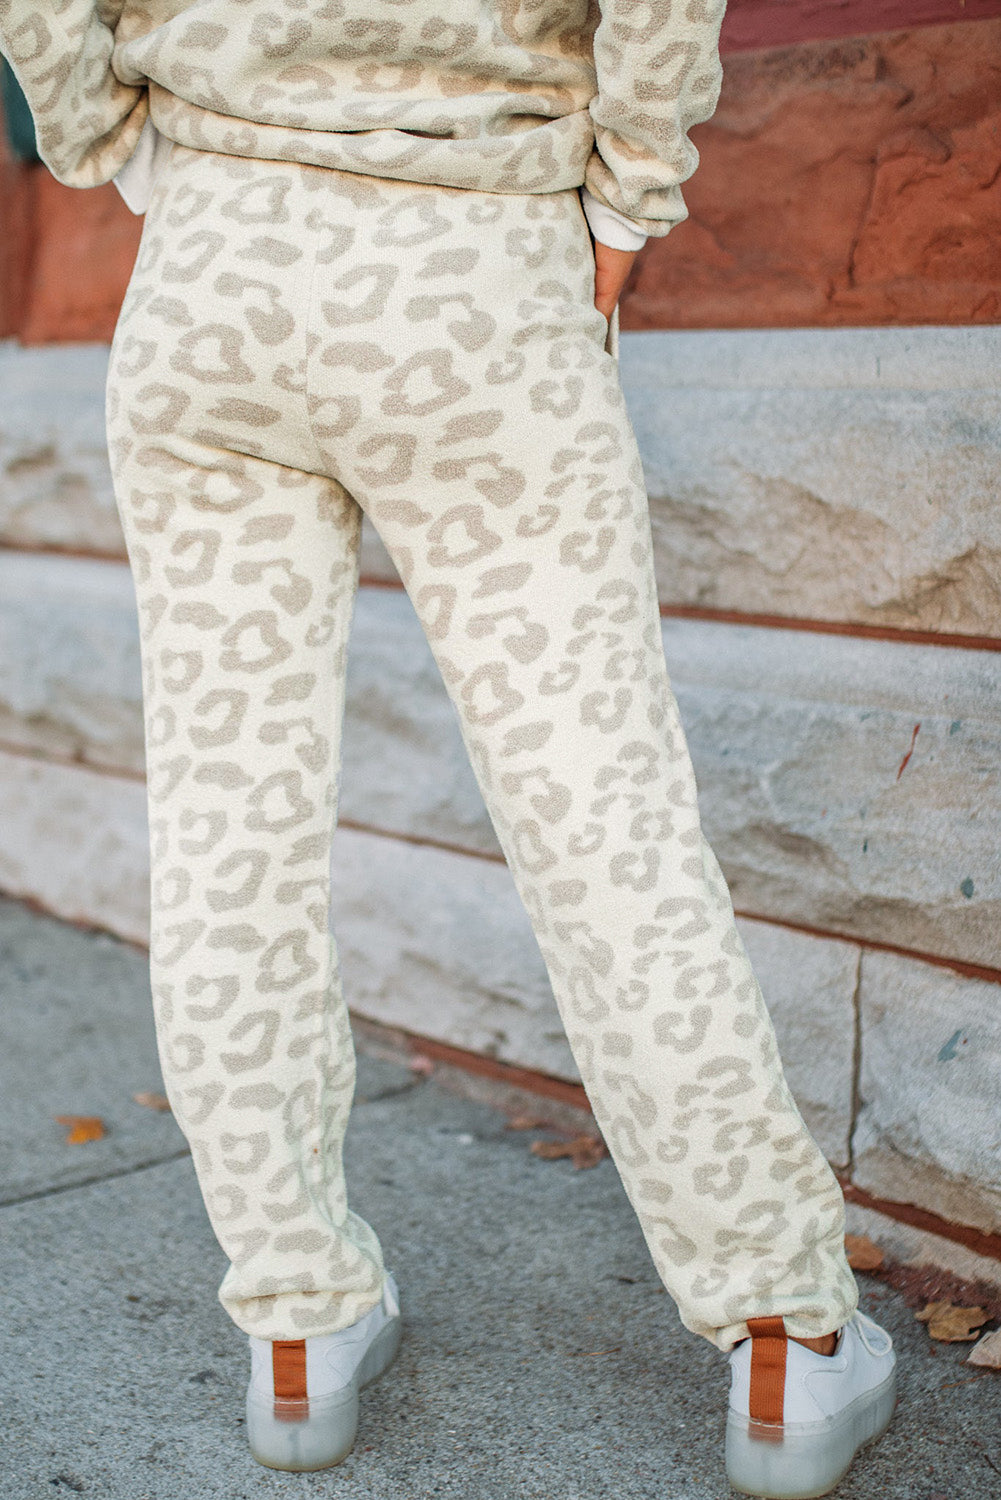 Bel leopard pulover in salonski komplet hlač z vrvico